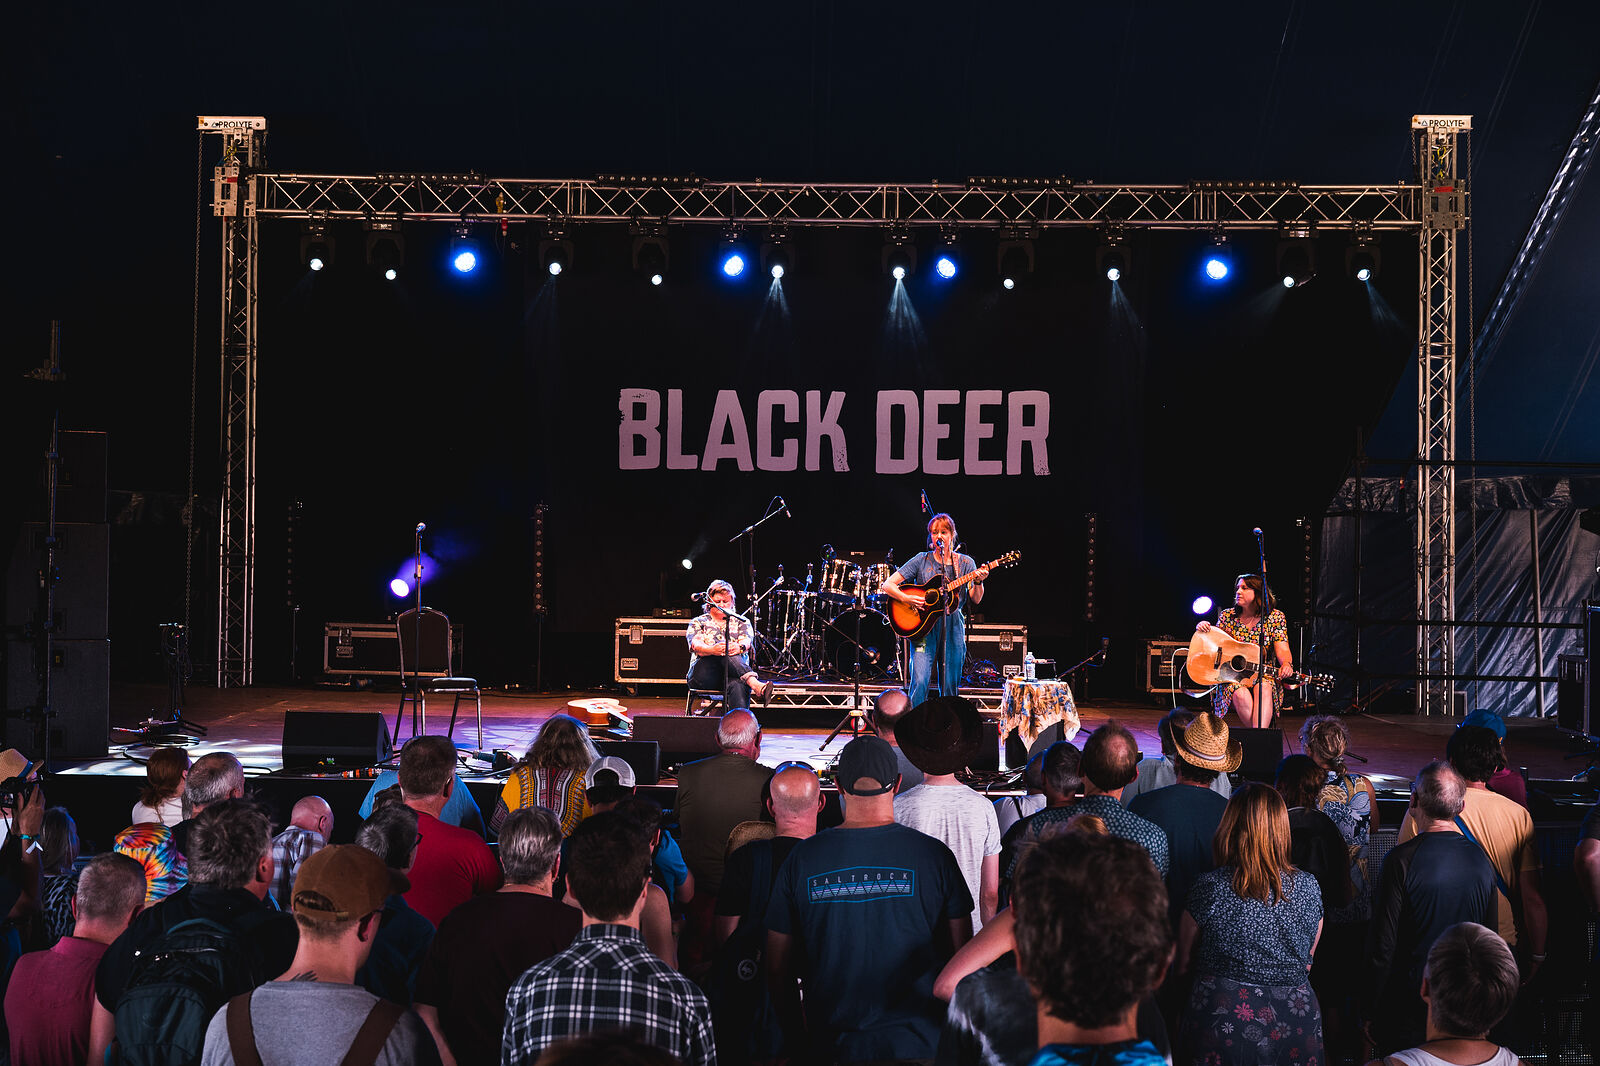 Black Deer Festival 2022